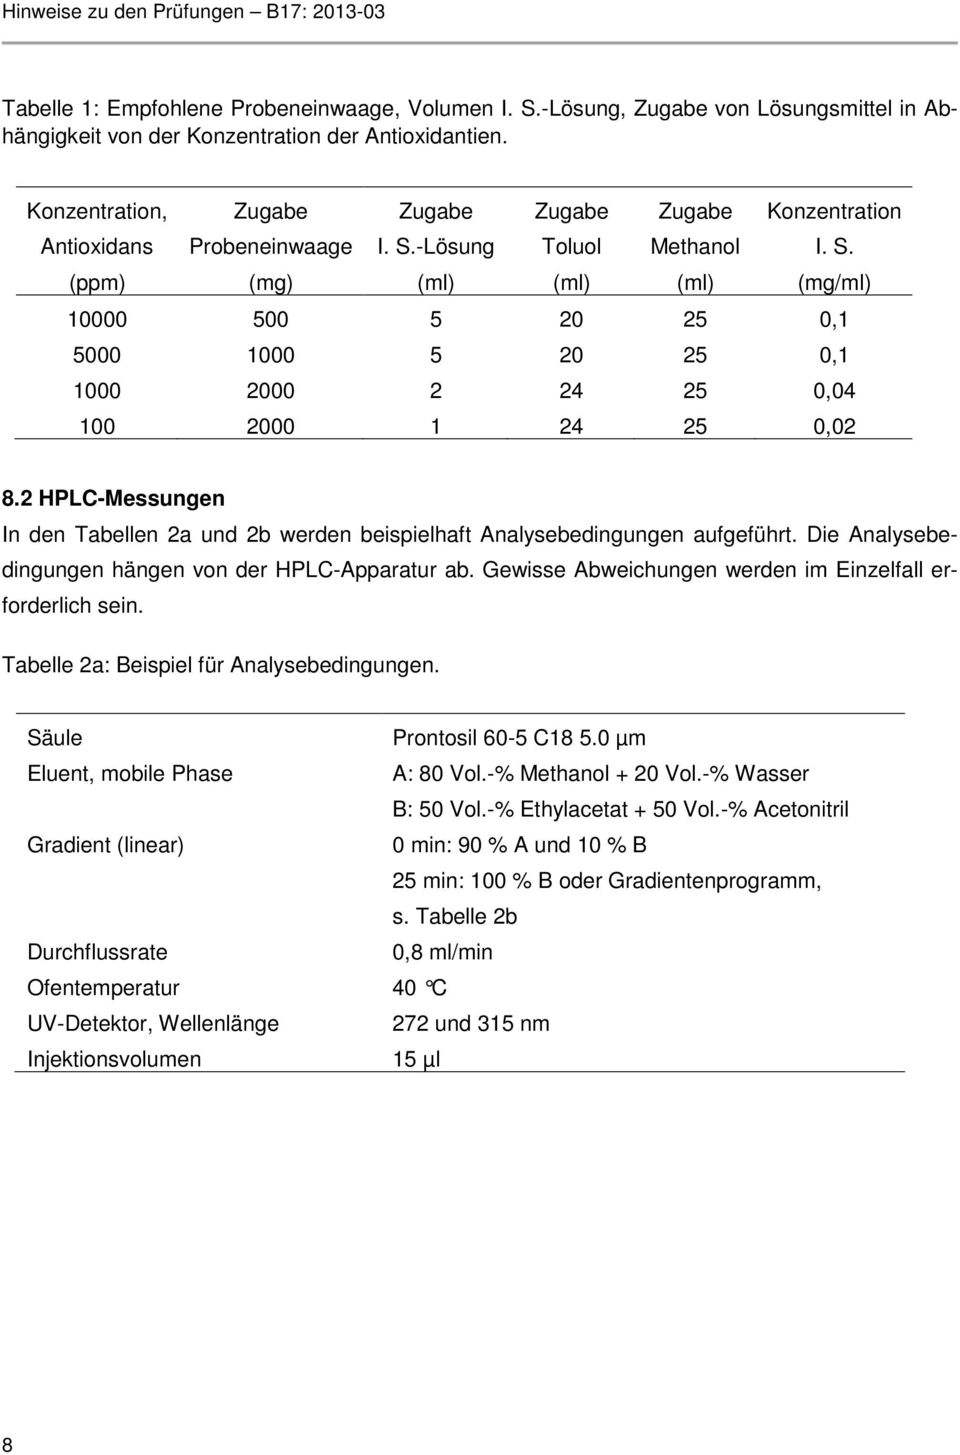 2 HPLC-Messungen In den Tabellen 2a und 2b werden beispielhaft Analysebedingungen aufgeführt. Die Analysebedingungen hängen von der HPLC-Apparatur ab.